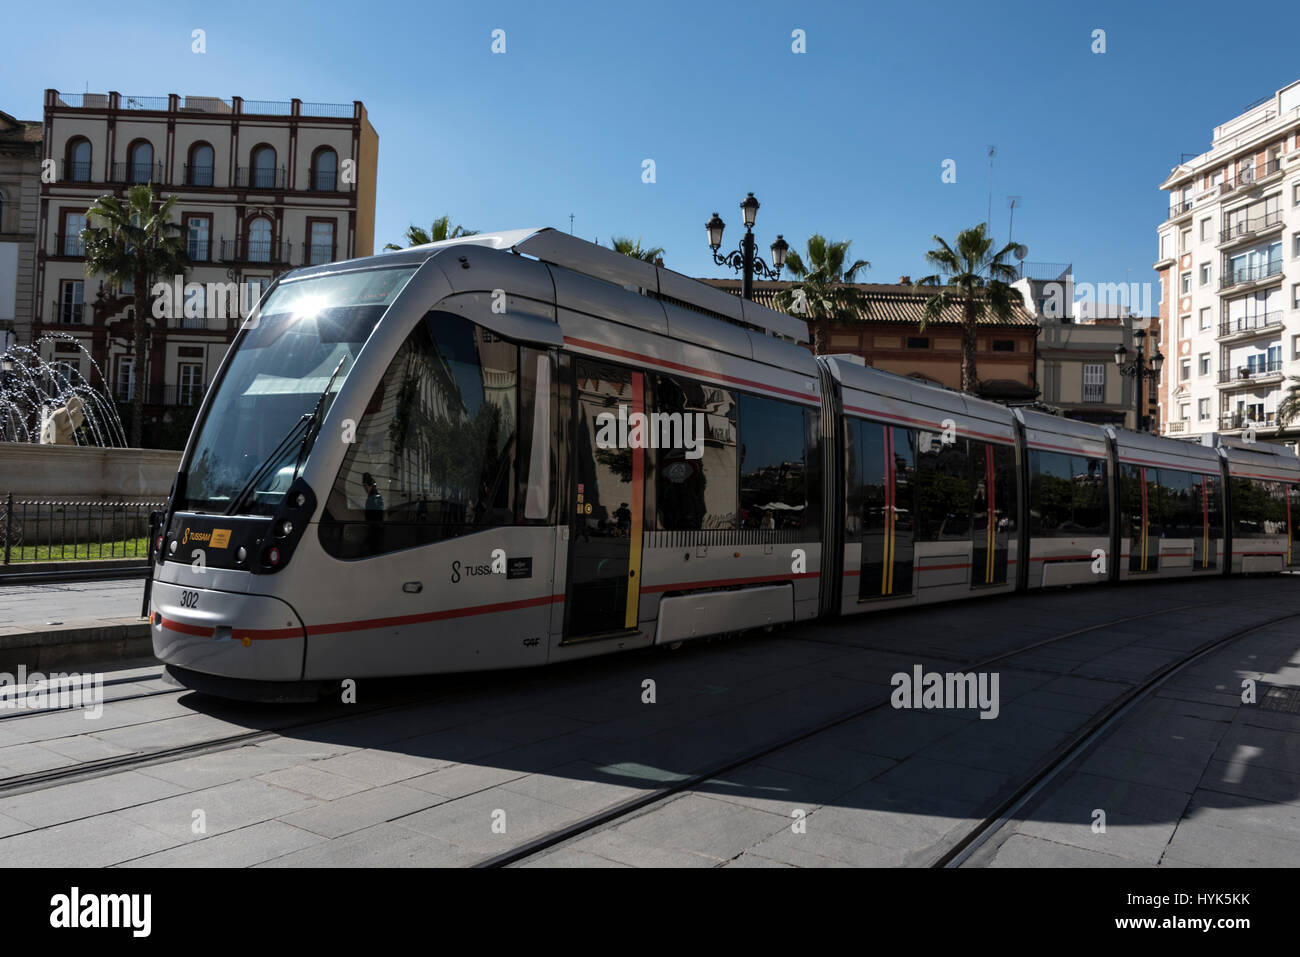 A new tram system in service  on Avenida de la Constitucion (Constitution Avenue)  Seville, Spain Stock Photo